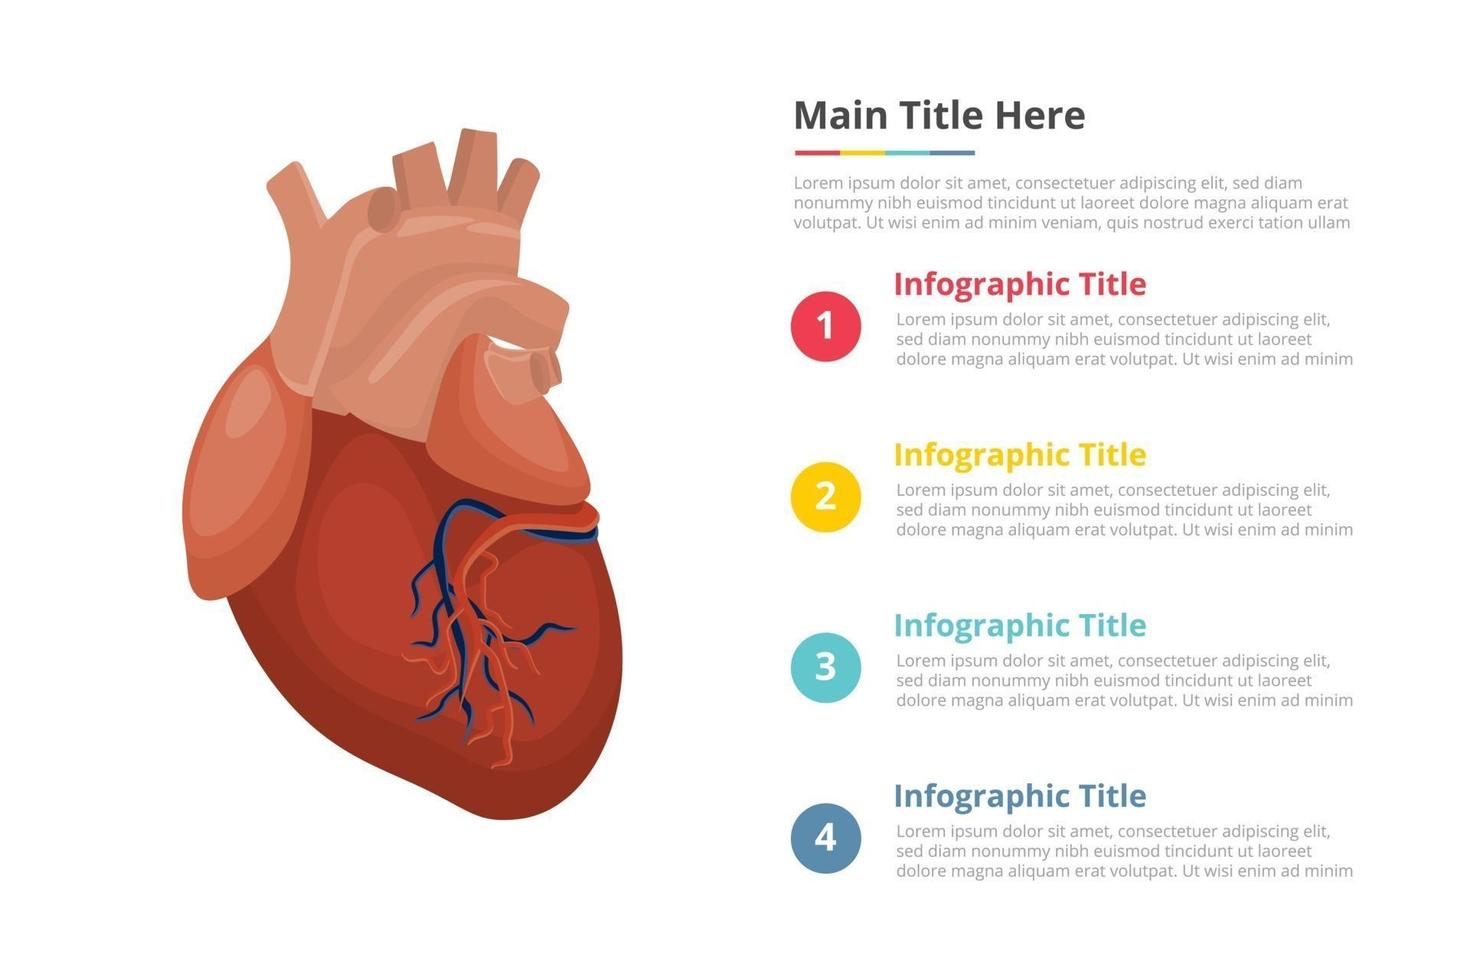 modelo de infográficos de coração humano com 4 pontos de descrição de texto de espaço livre - ilustração vetorial vetor